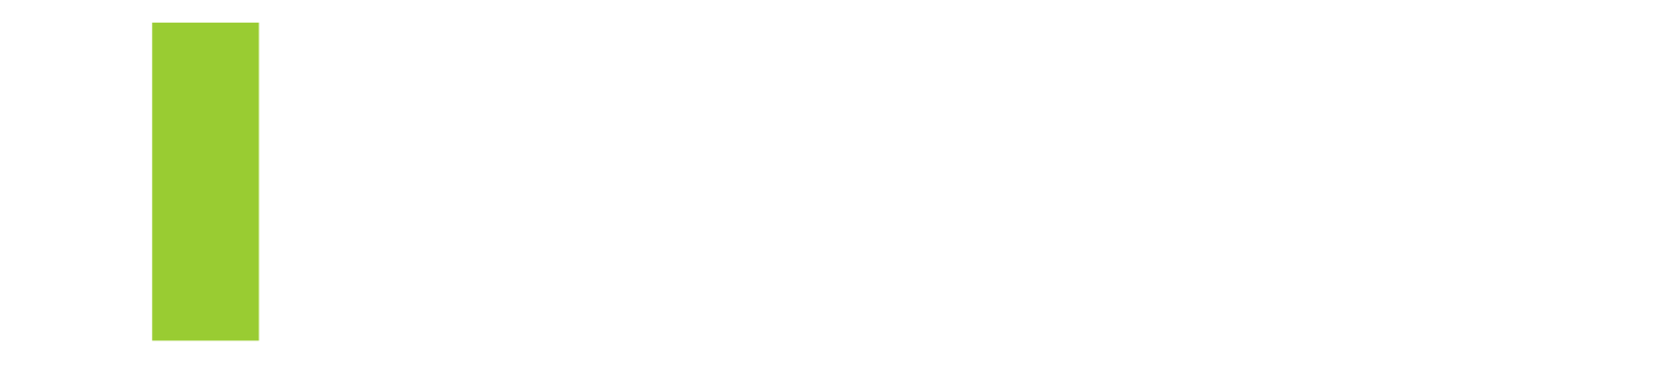 Логотип Первая лицензирующая компания